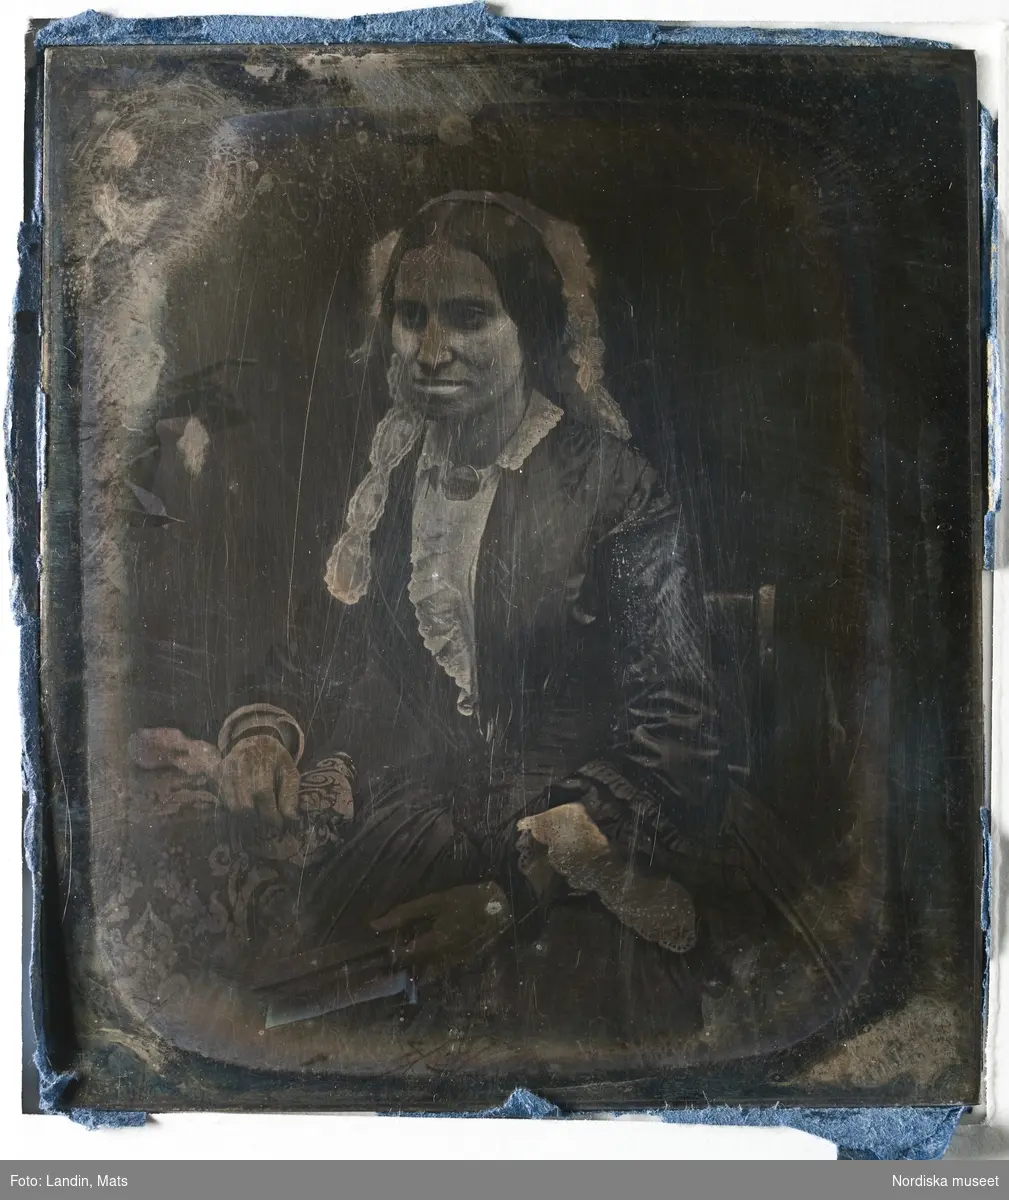 Dagerrotyp / daguerreotyp, porträtt av okänd dam. Nordiska museet inv.nr 257834.
-
Portrait of unidentified woman. Sixth-plate daguerreotype.